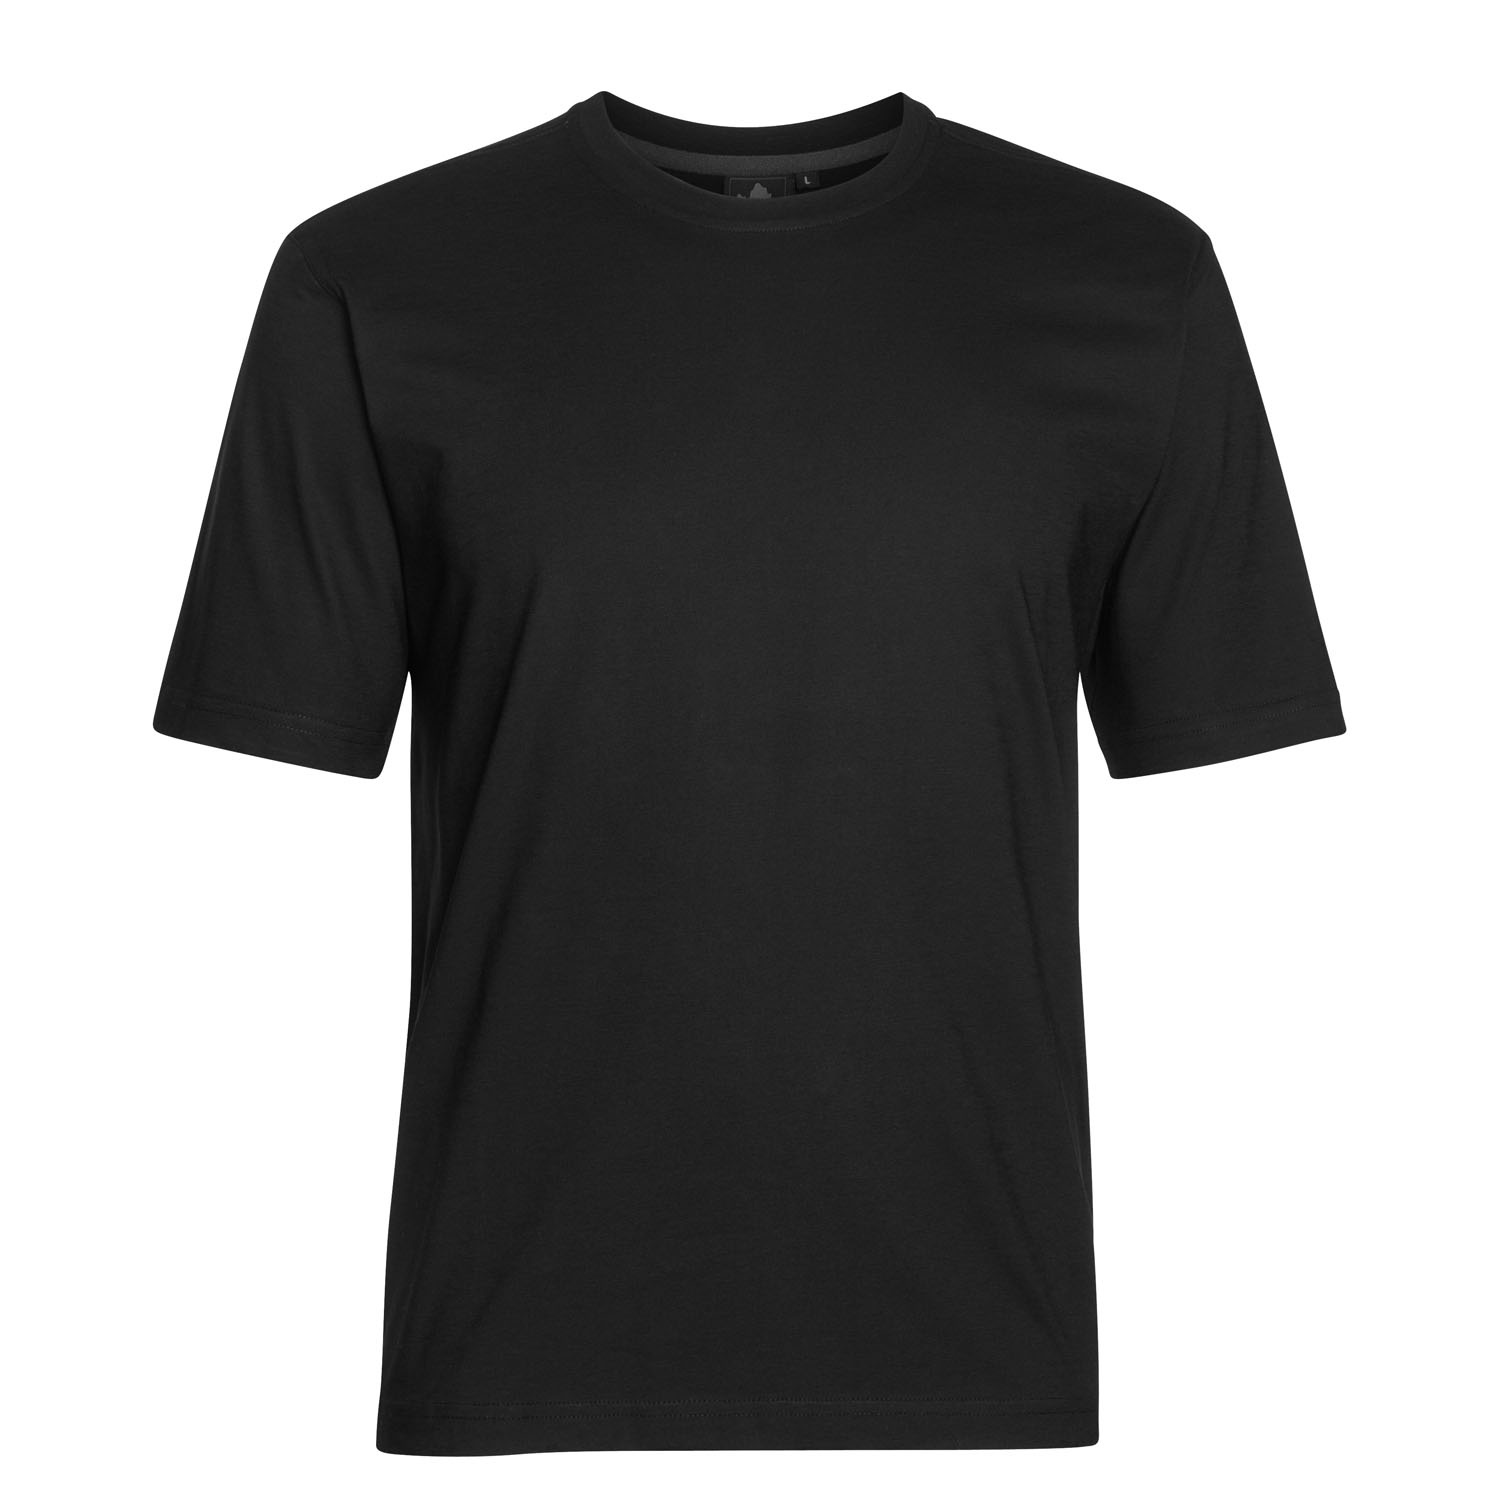 T-shirt noir avec col rond by Ahorn Sportswear en grandes tailles jusqu'au 10XL